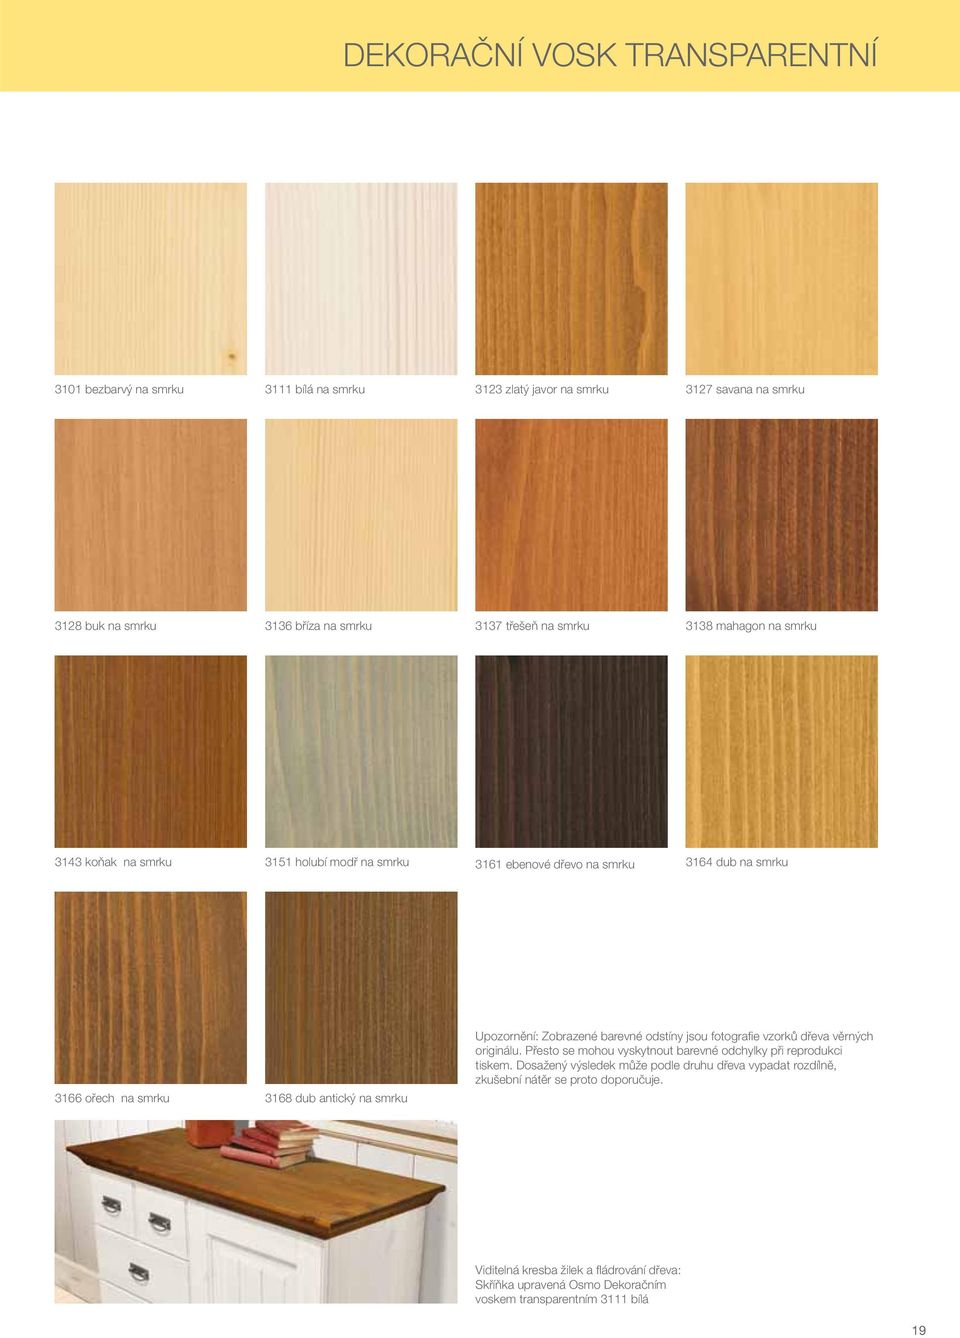 Upozornění: Zobrazené barevné odstíny jsou fotografi e vzorků dřeva věrných originálu. Přesto se mohou vyskytnout barevné odchylky při reprodukci tiskem.